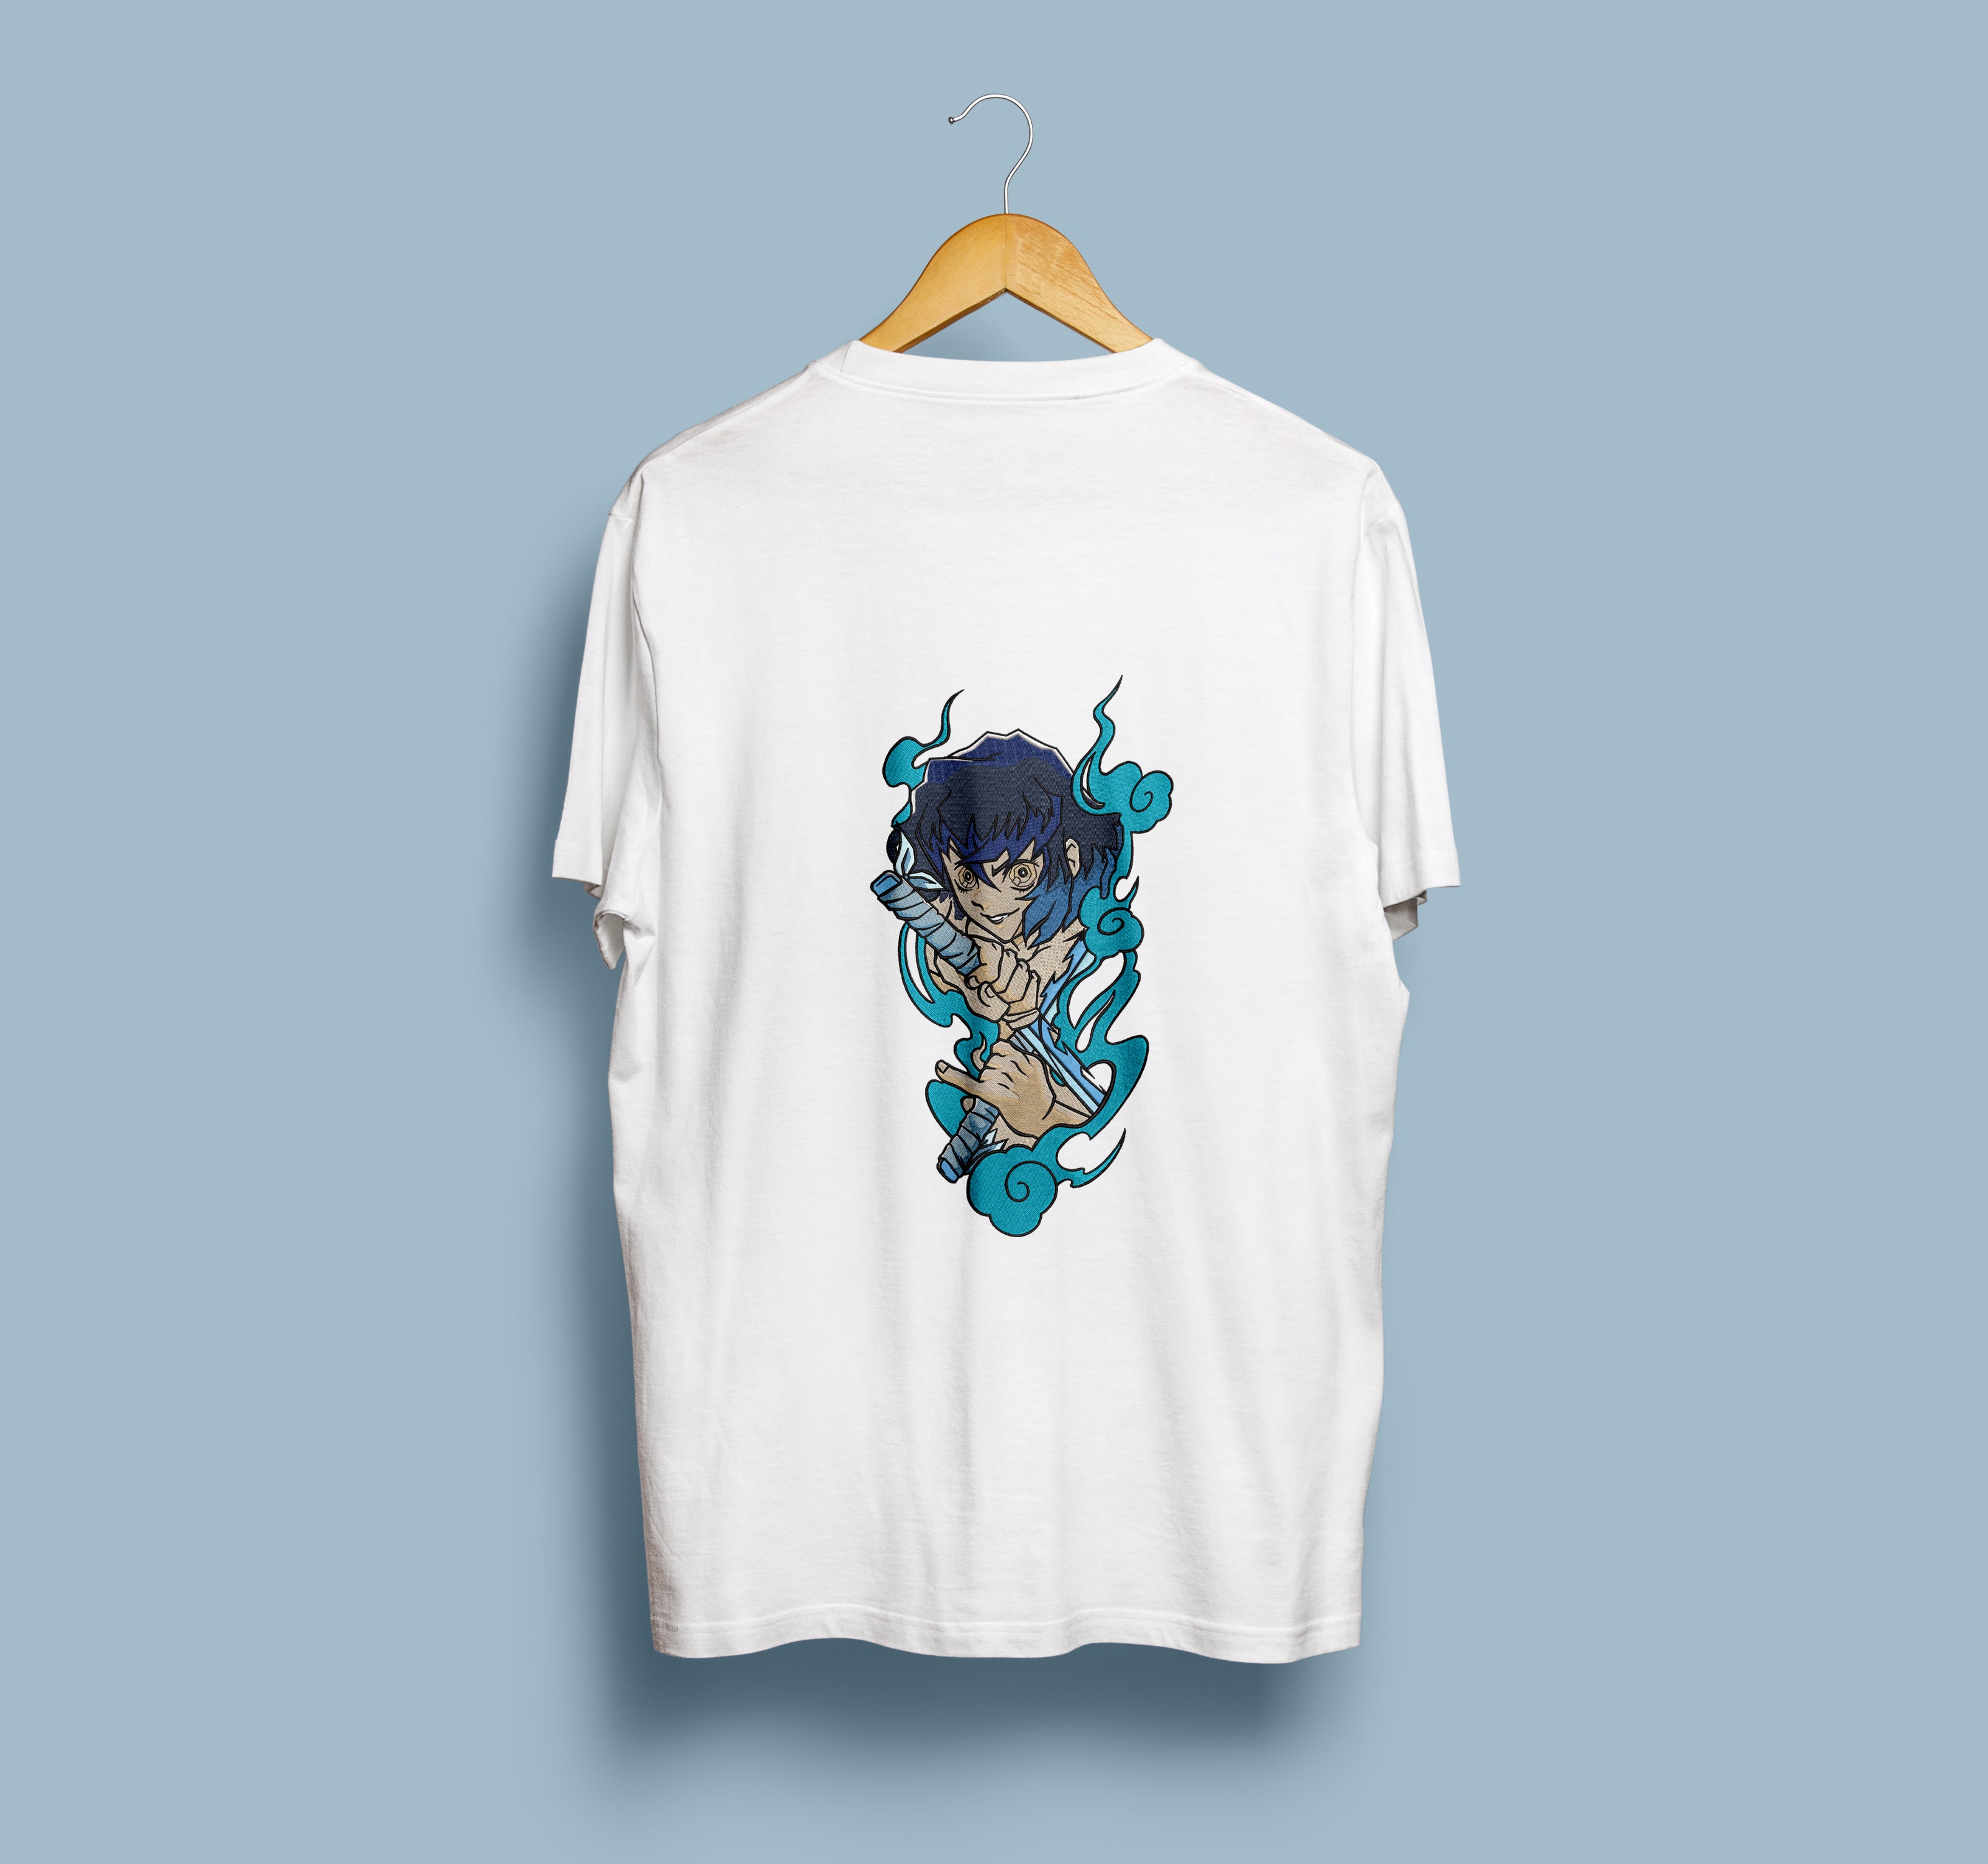 Anime t shirt - Men - 1762652663